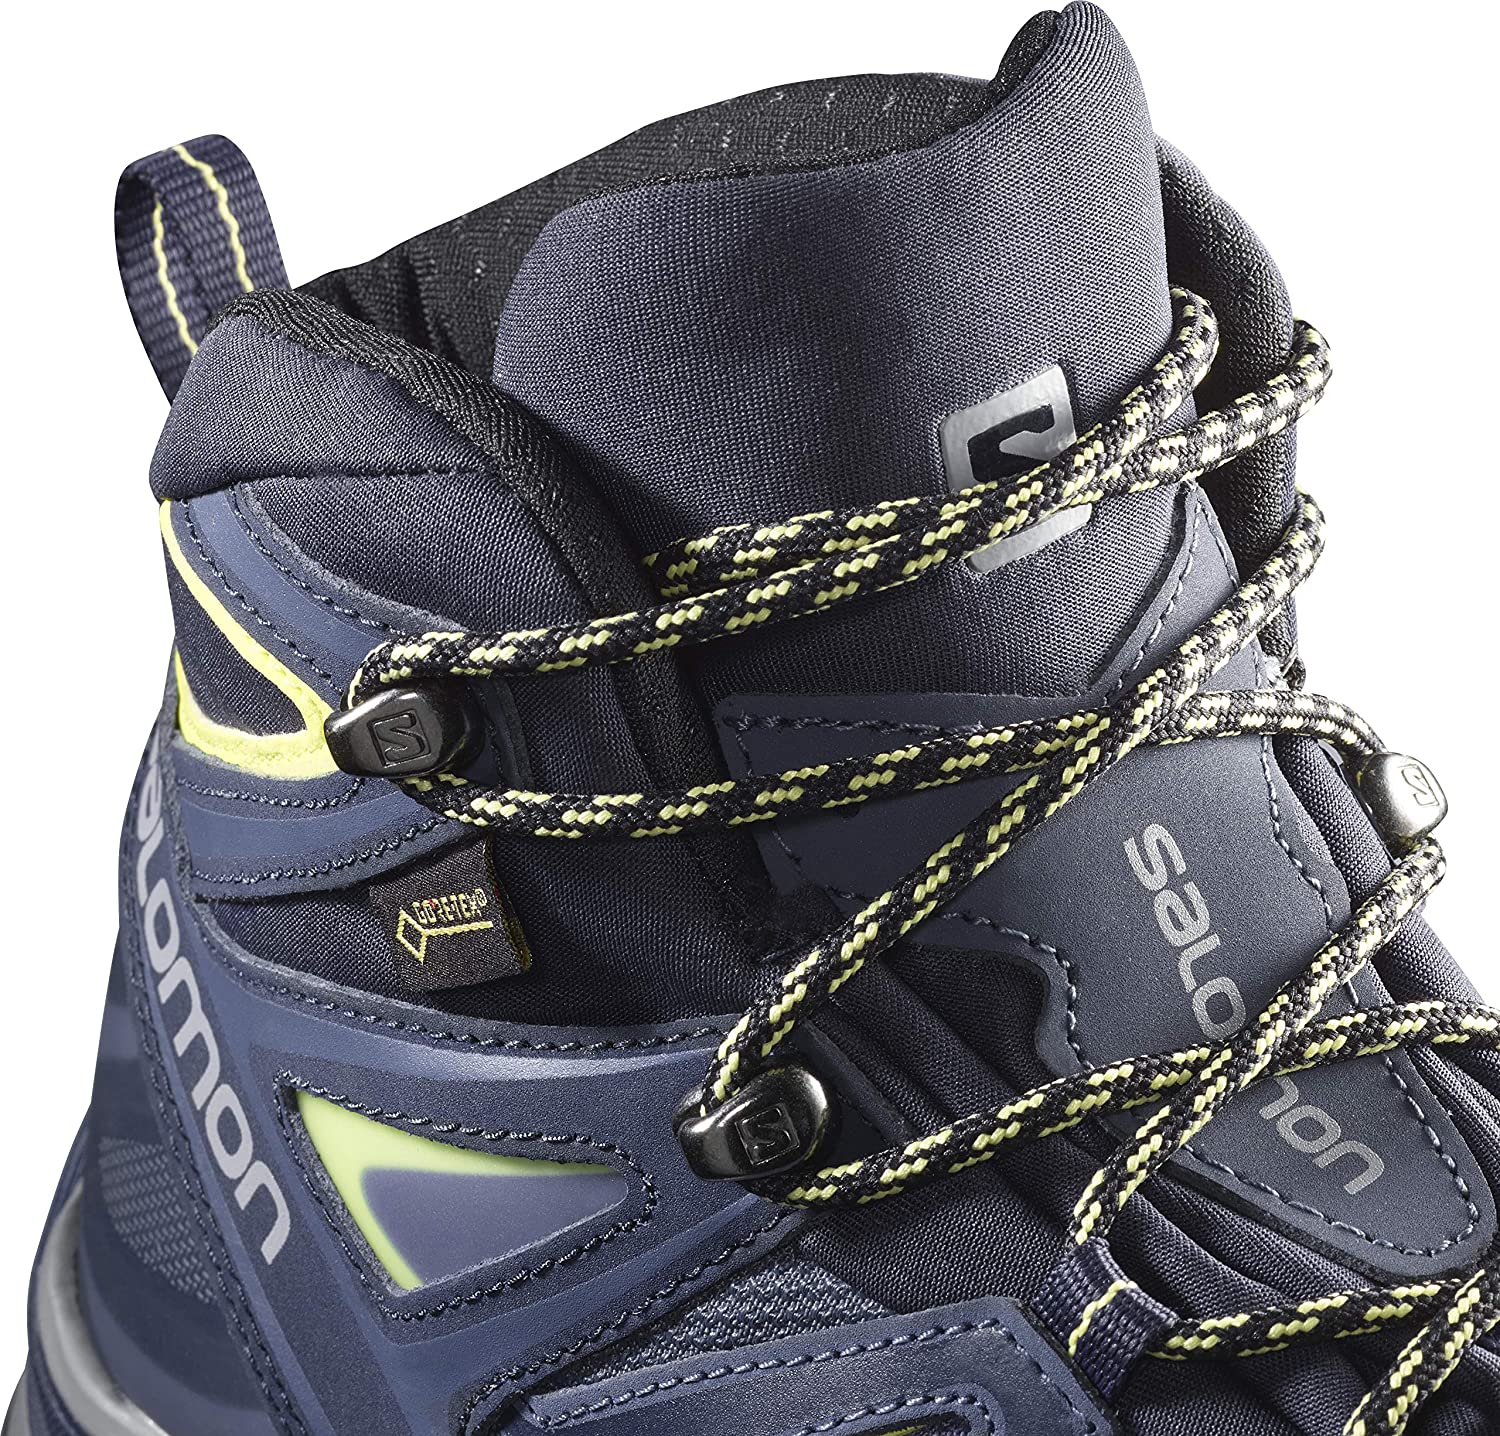 Salomon X Ultra MID W Hiking Boots | eBay